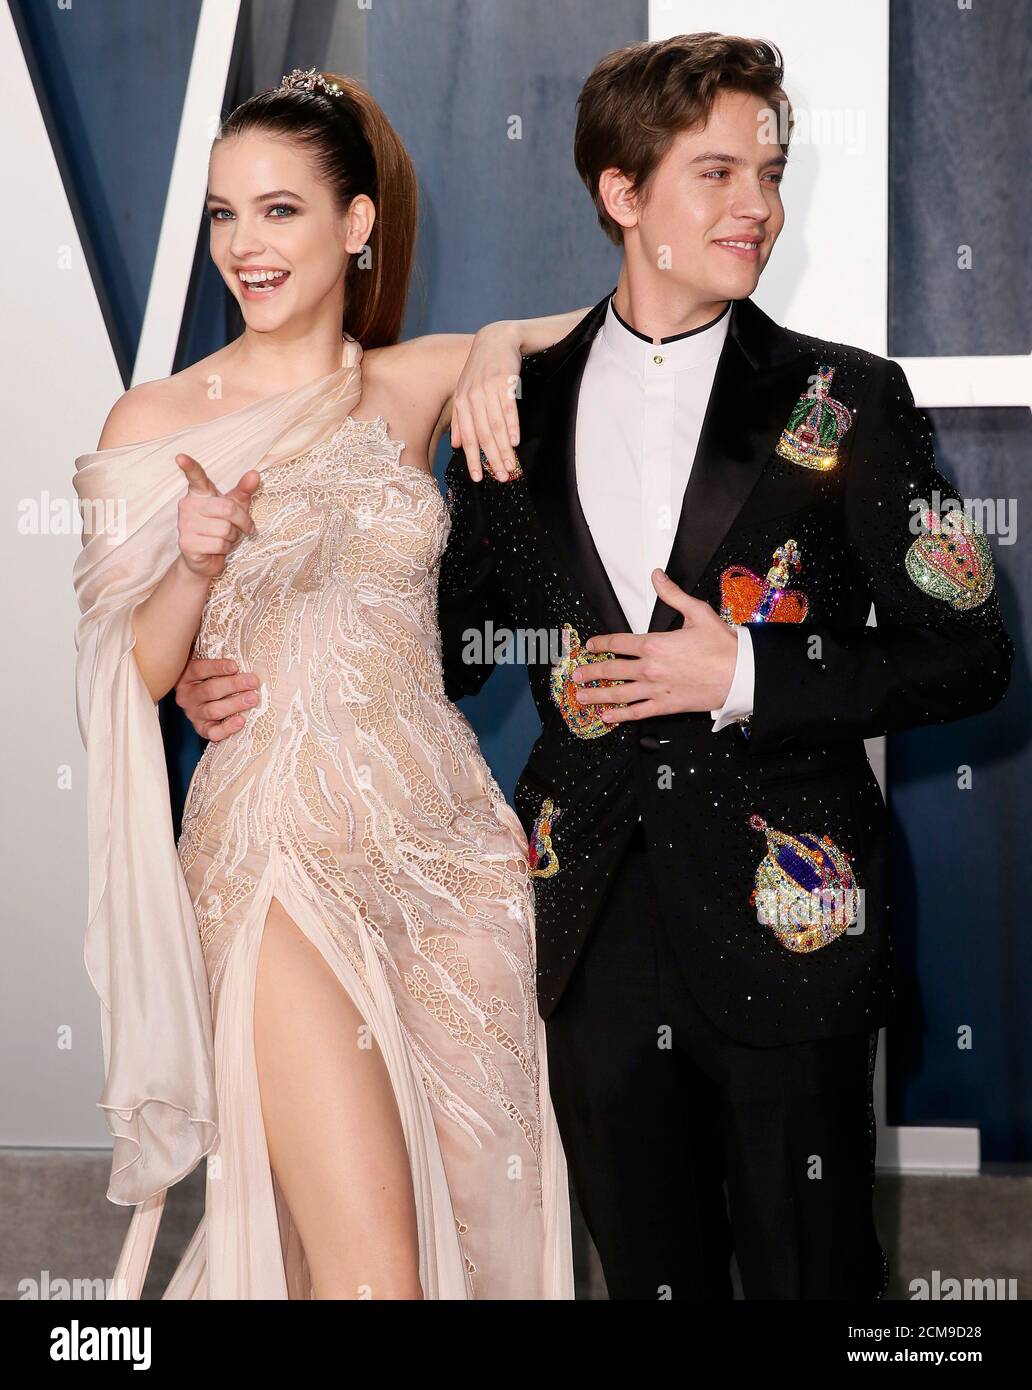 Barbara Palvin y Dylan Sprouse asisten a la fiesta de la Vanity Fair Oscar  en Beverly Hills durante los 92nd Academy Awards, en los Ángeles,  California, EE.UU., 9 de febrero de 2020.